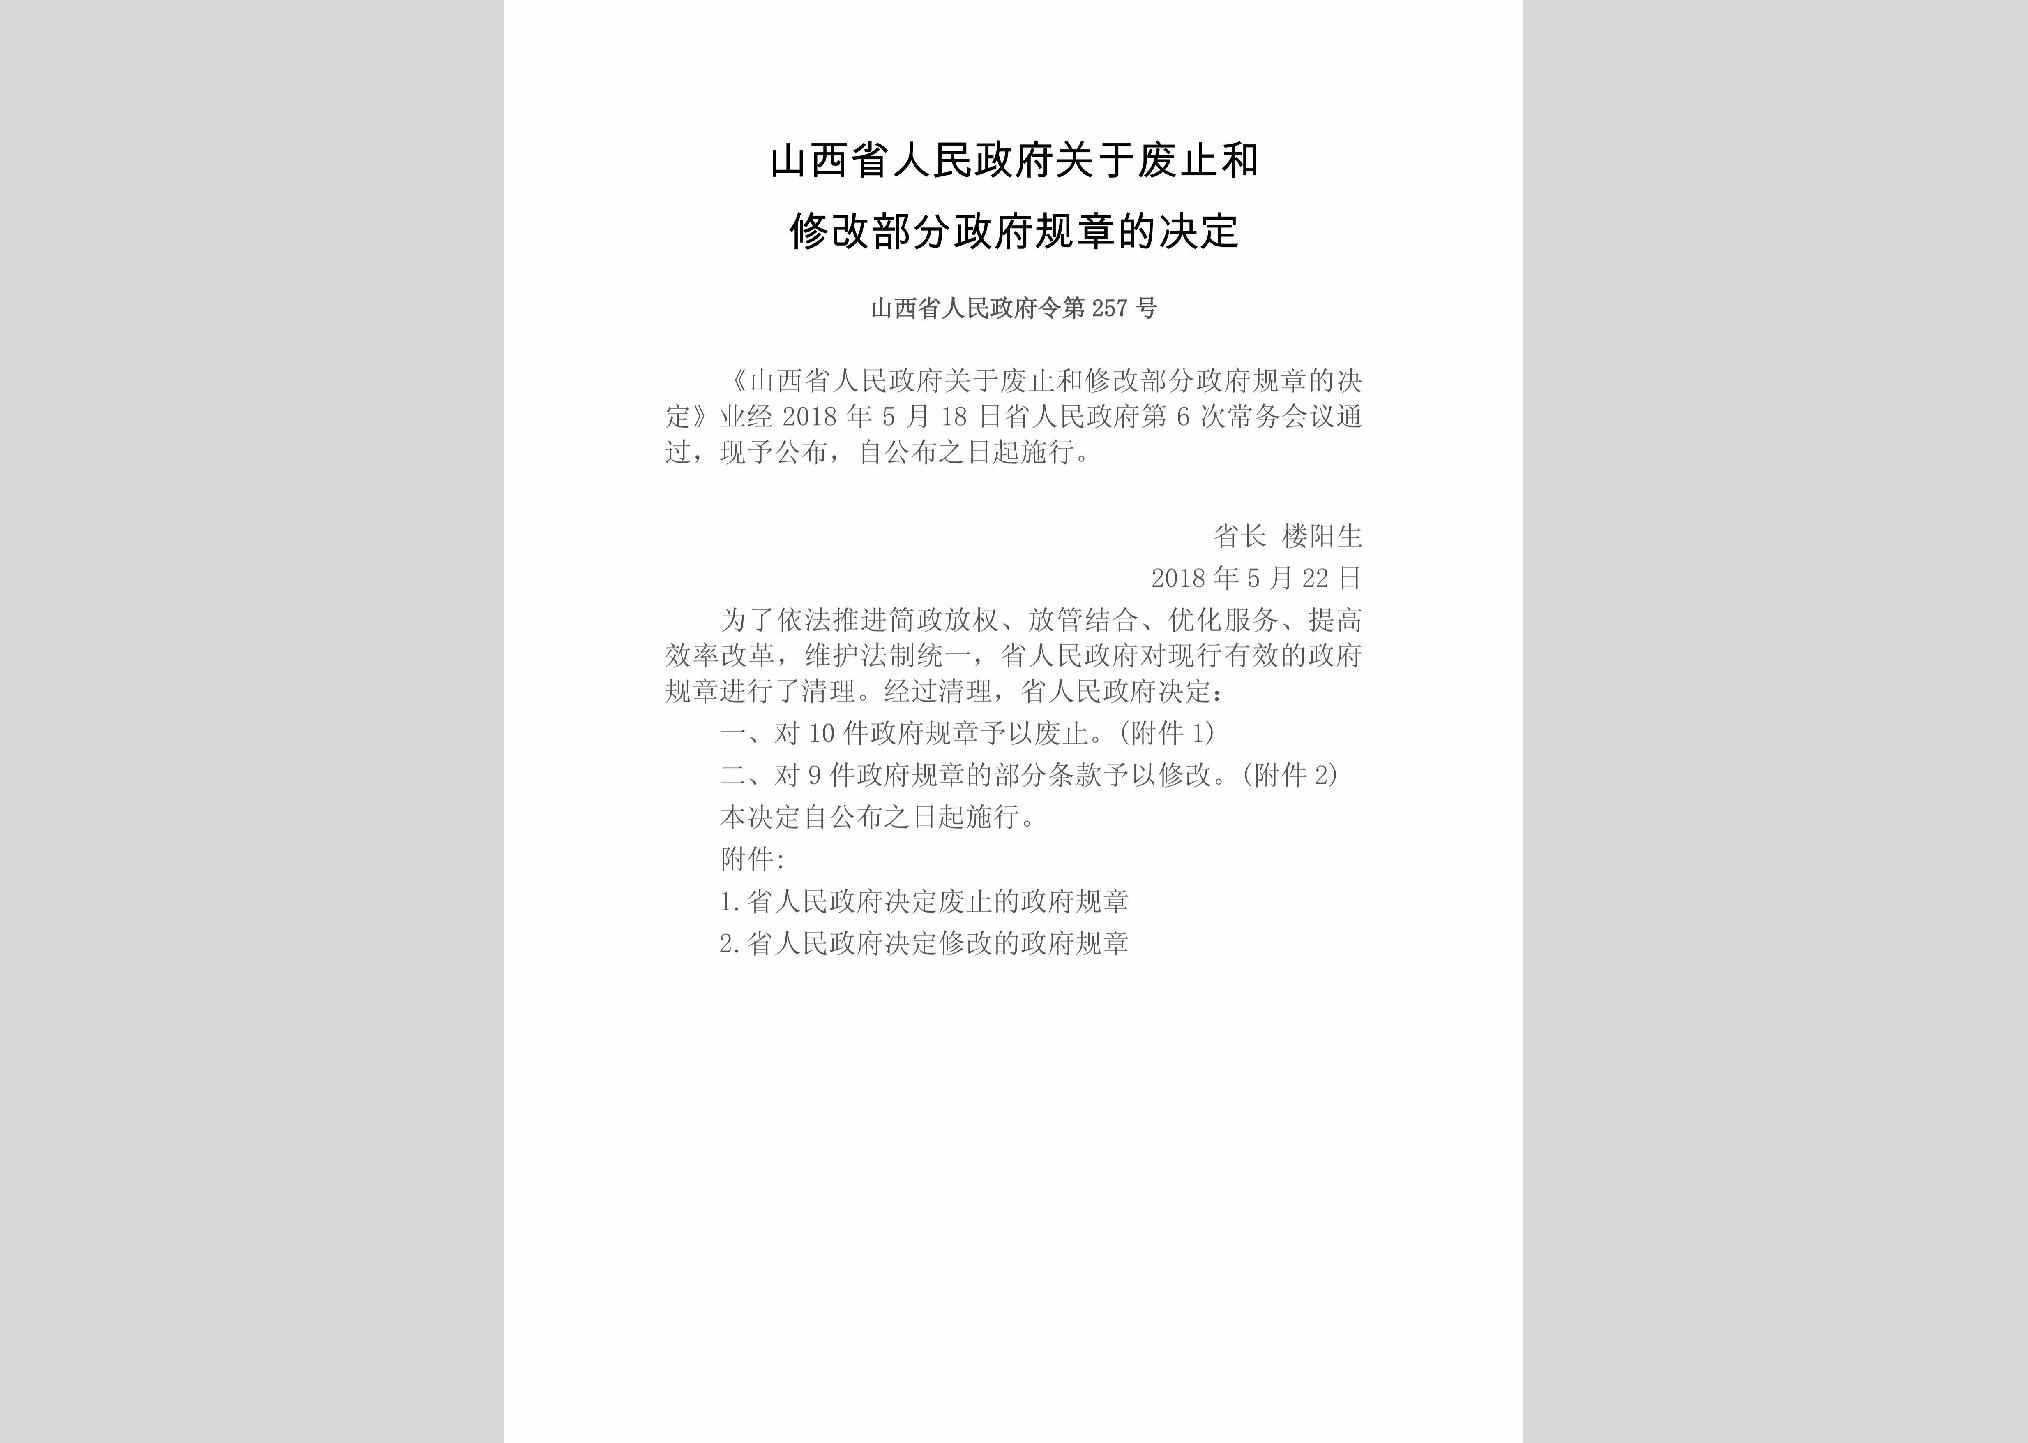 山西省人民政府令第257号：山西省人民政府关于废止和修改部分政府规章的决定